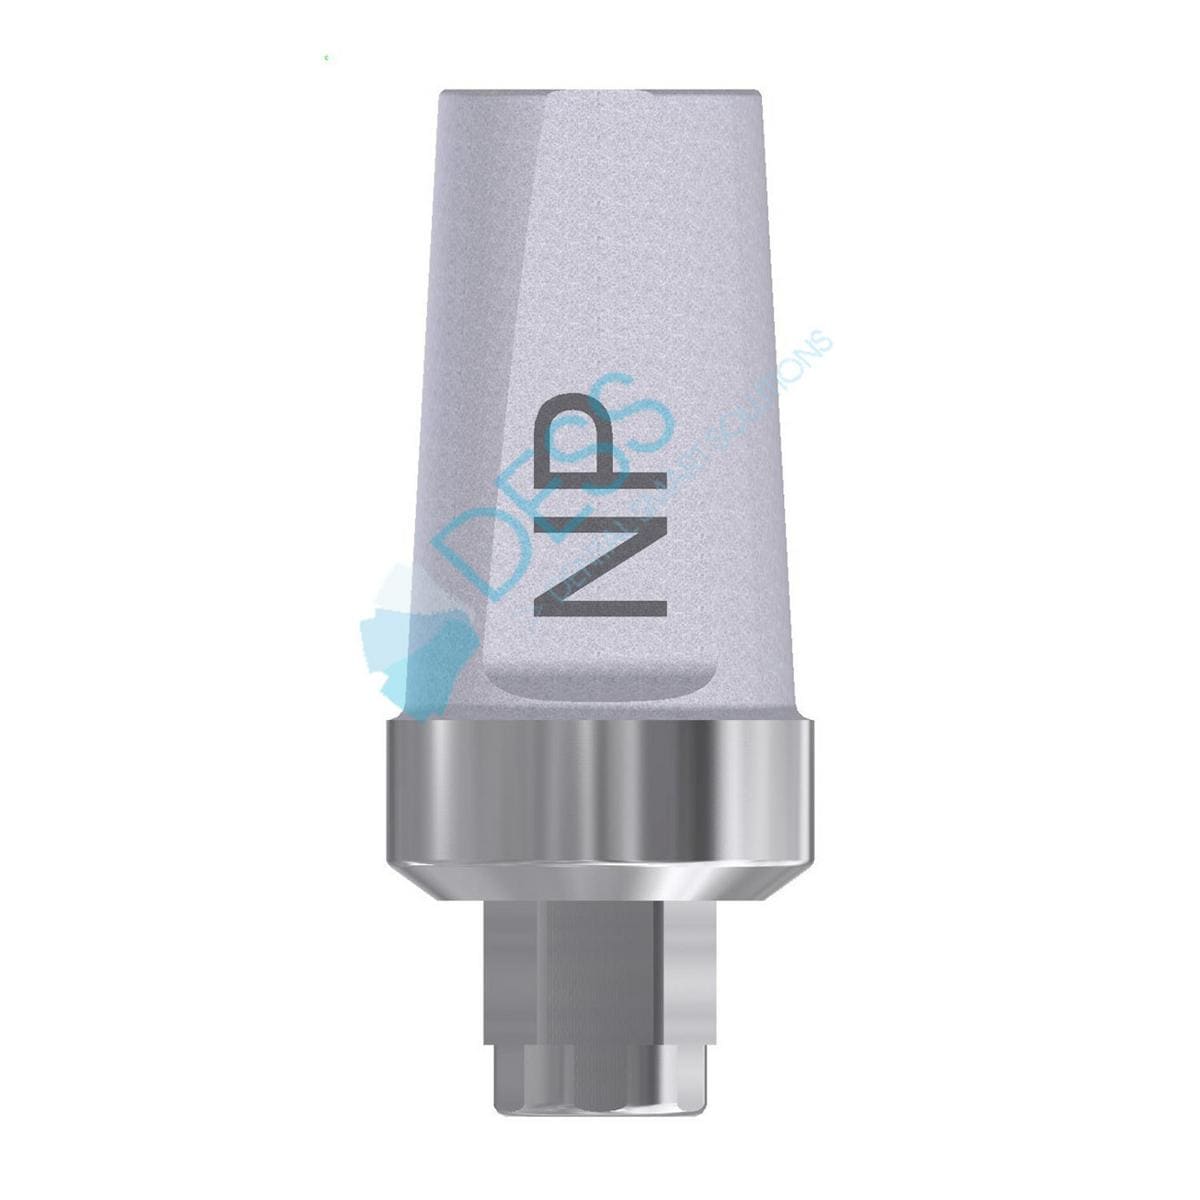 Titanbutment - kompatibel mit 3i® Certain® - NP Ø 3,45 mm, 0° gewinkelt